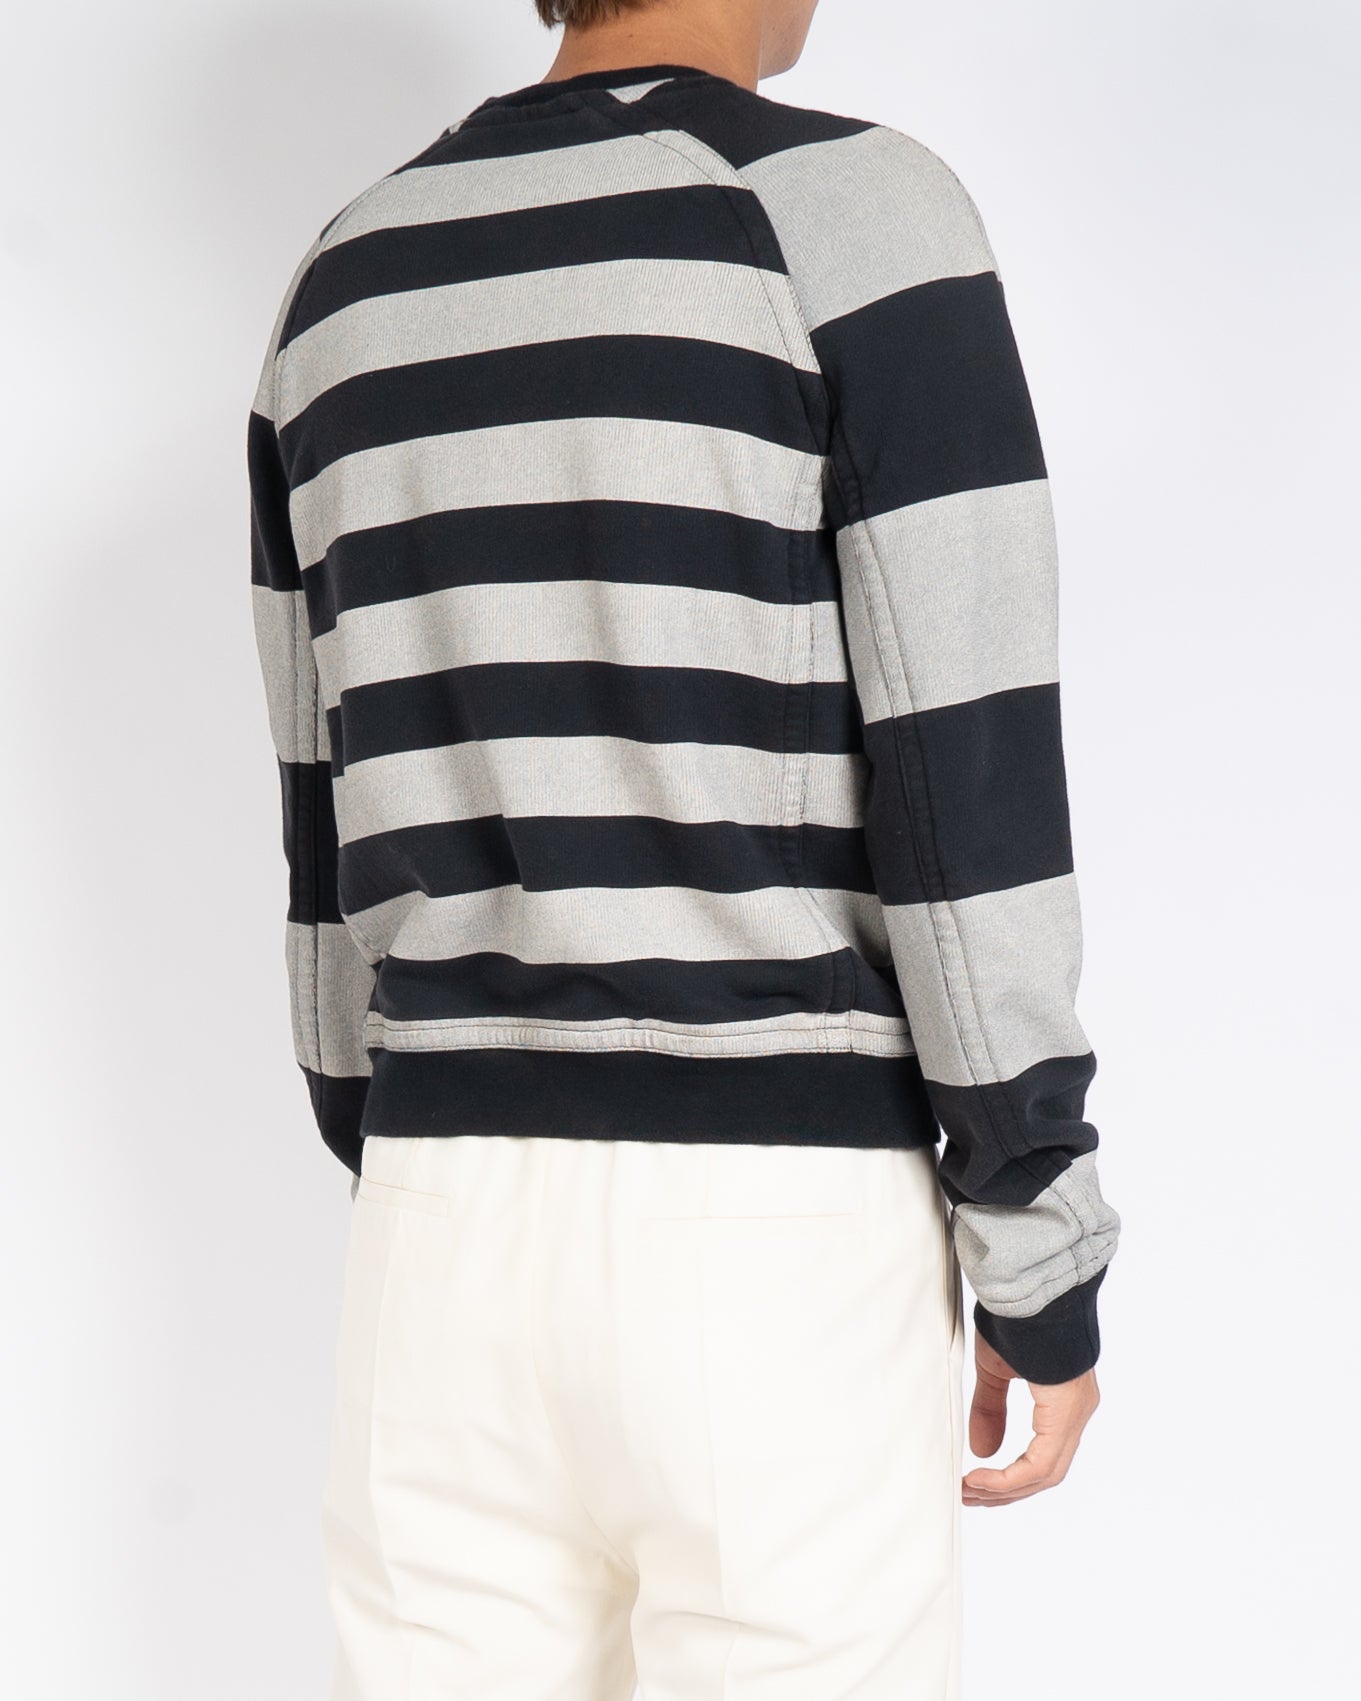 FW18 Primula Black Striped Sweater Sample